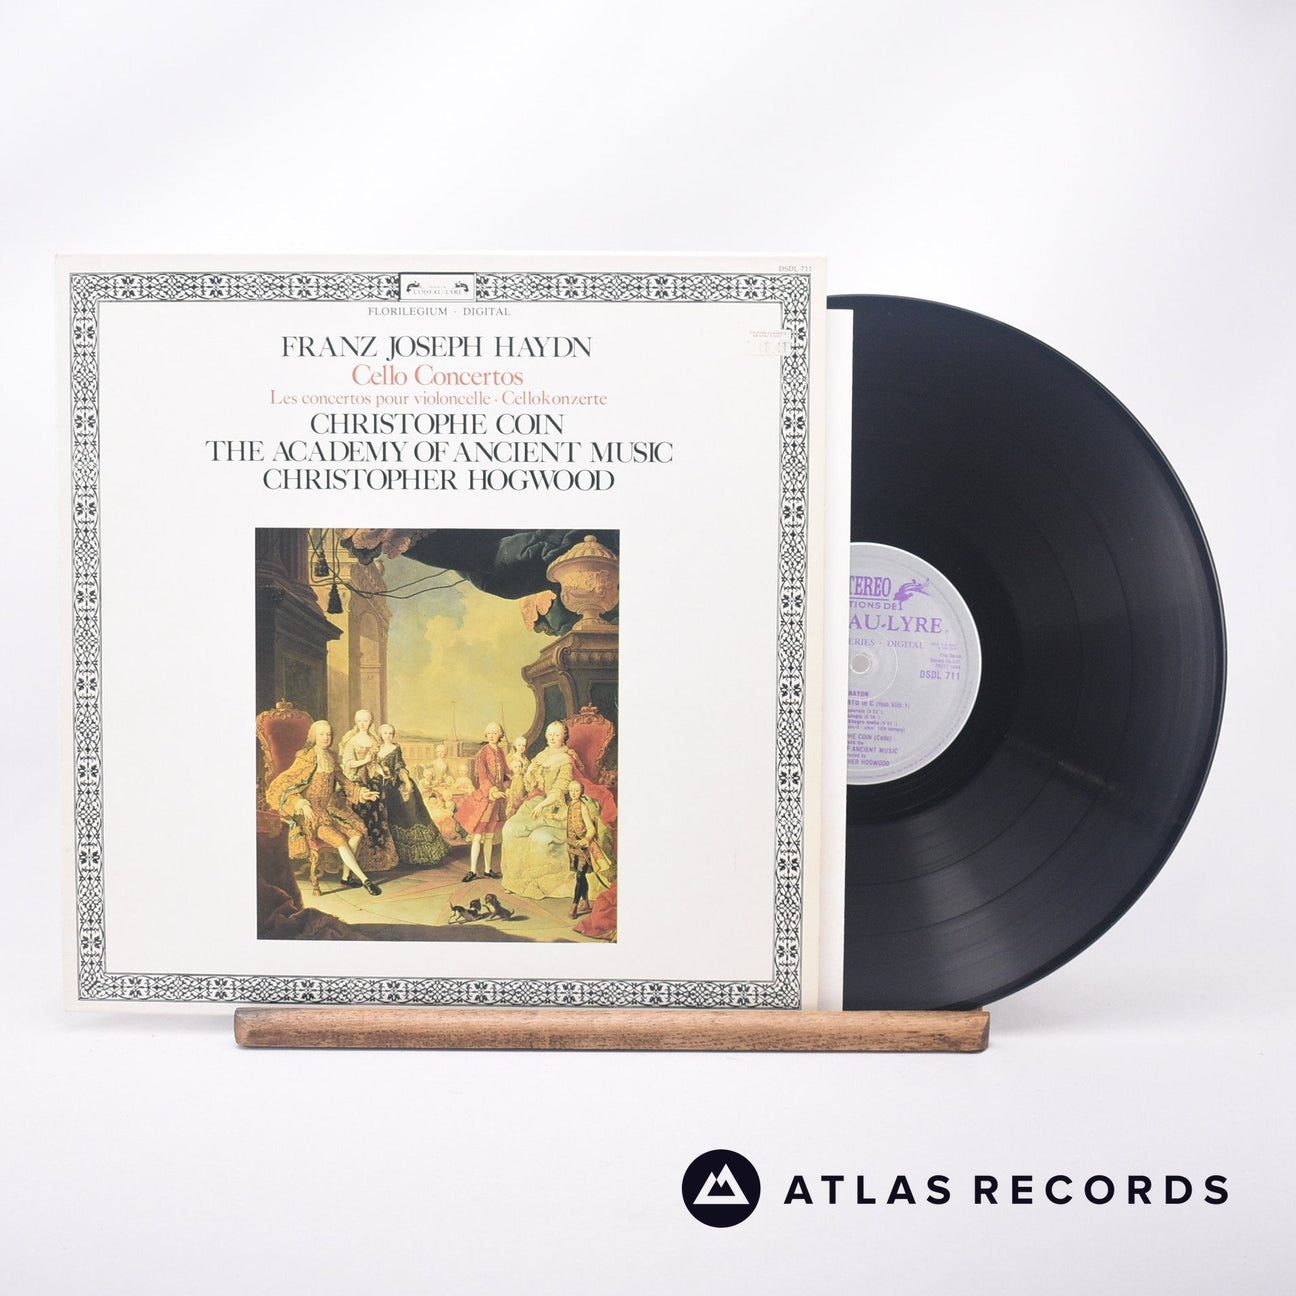 Joseph Haydn Cello Concertos = Les Concertos Pour Violoncelle = Cellokonzerte LP Vinyl Record - Front Cover & Record